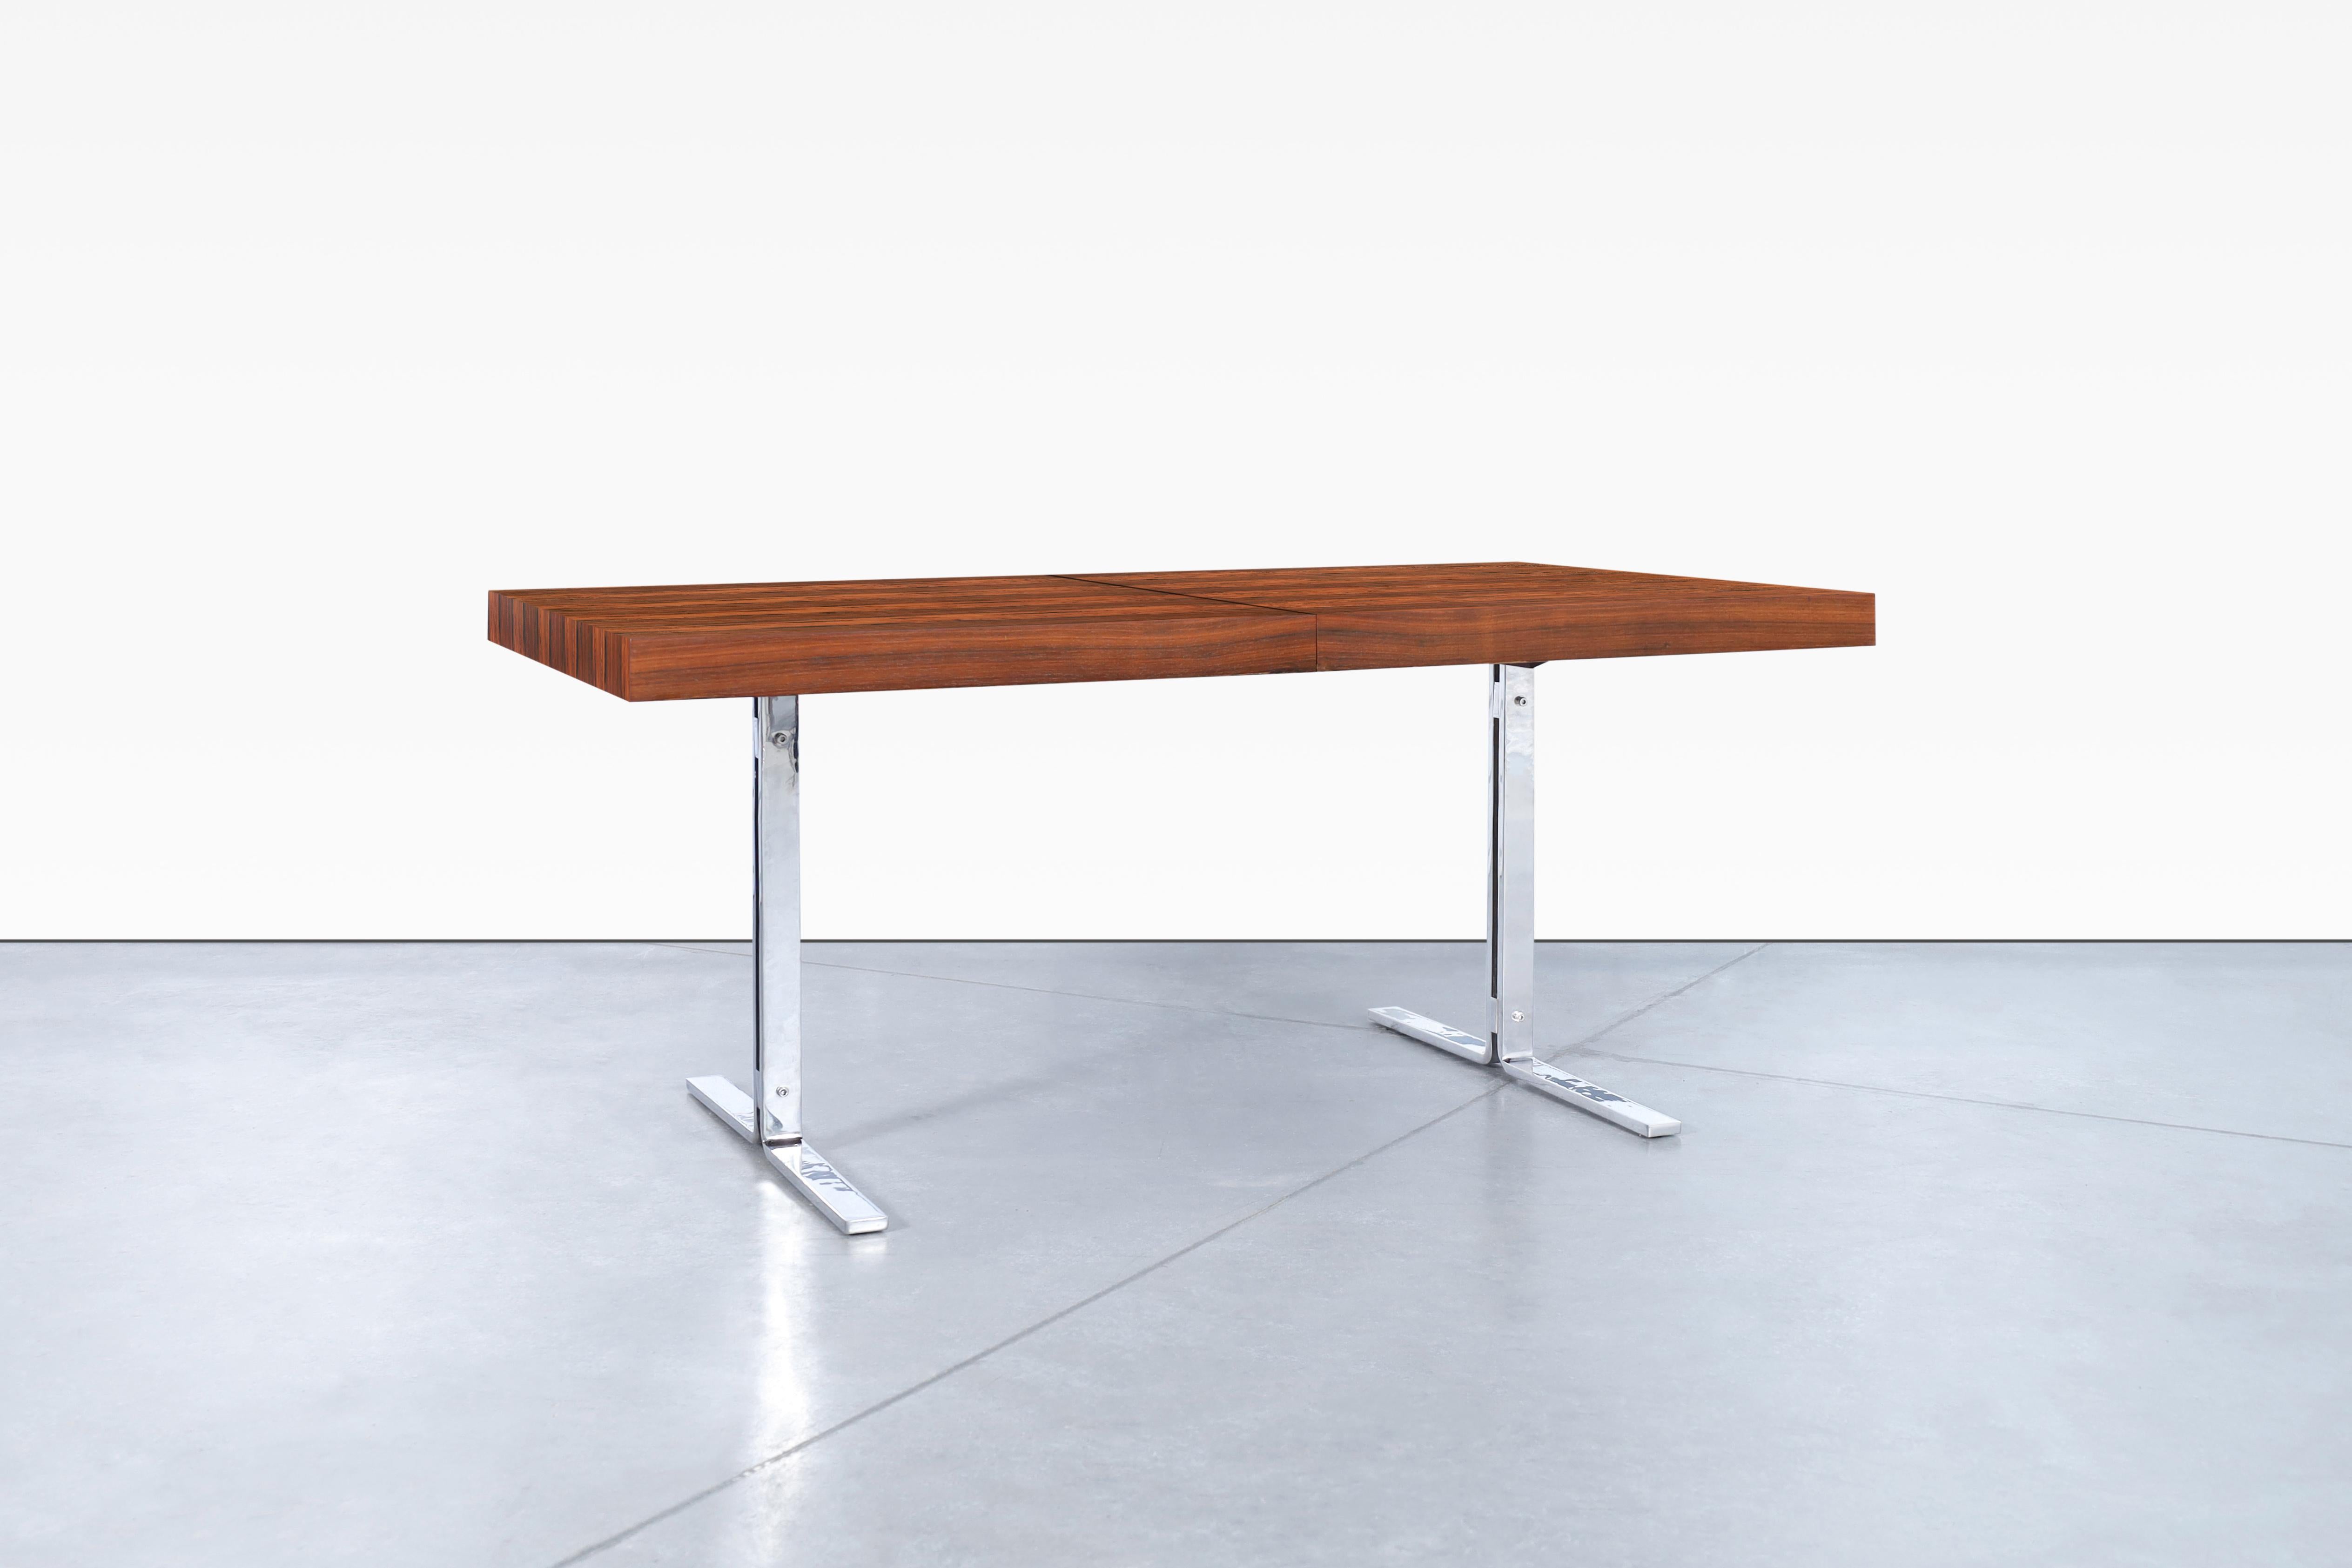 Magnifique table de salle à manger moderne danoise en bois de rose par Poul Nørreklit pour Georg Petersens, fabriquée au Danemark, vers les années 1960. Cette table artisanale au design avant-gardiste est composée de palissandre brésilien de la plus